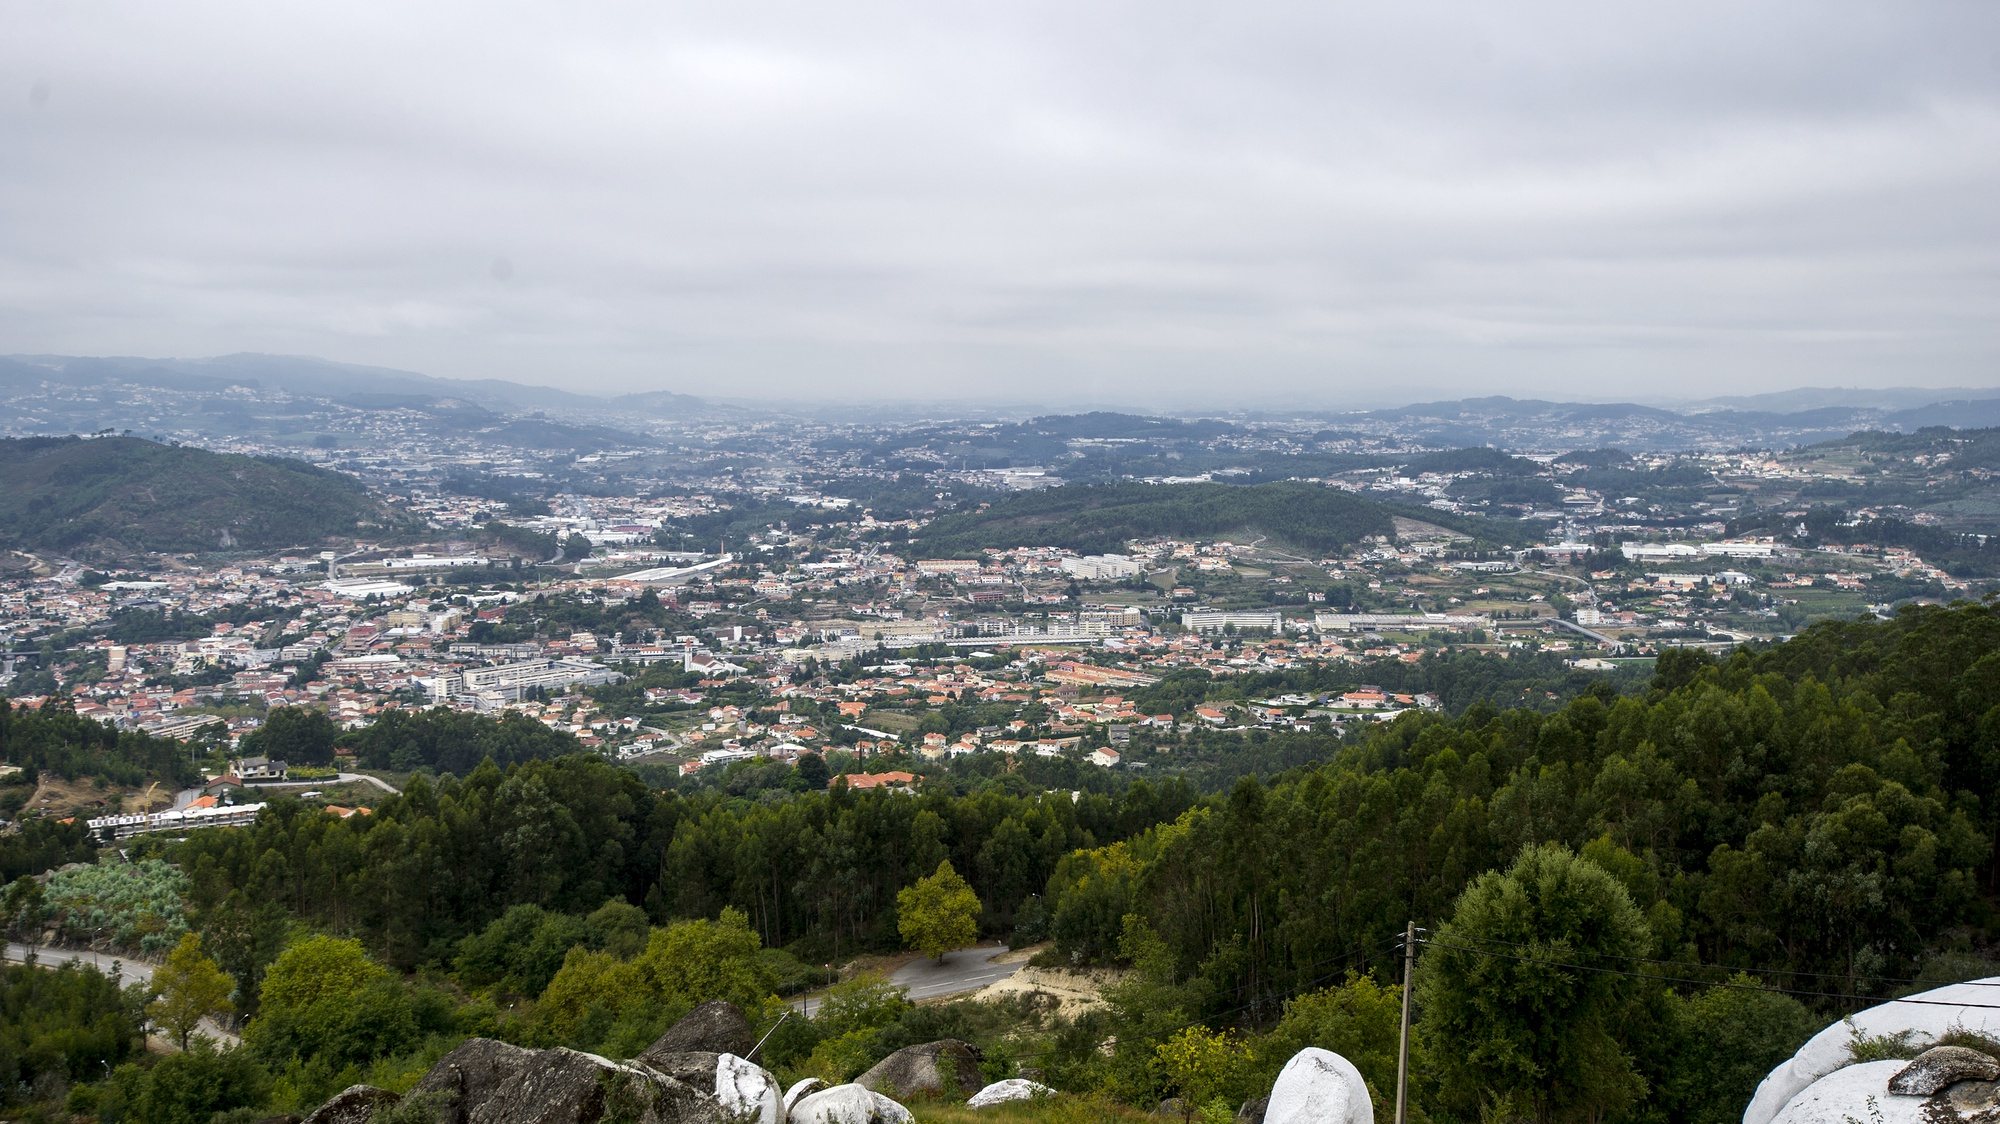 Vista geral de Vizela desde o Miradouro São Bento das Peras, em Vizela, 14 de setembro de 2017. OCTÁVIO PASSOS/LUSA